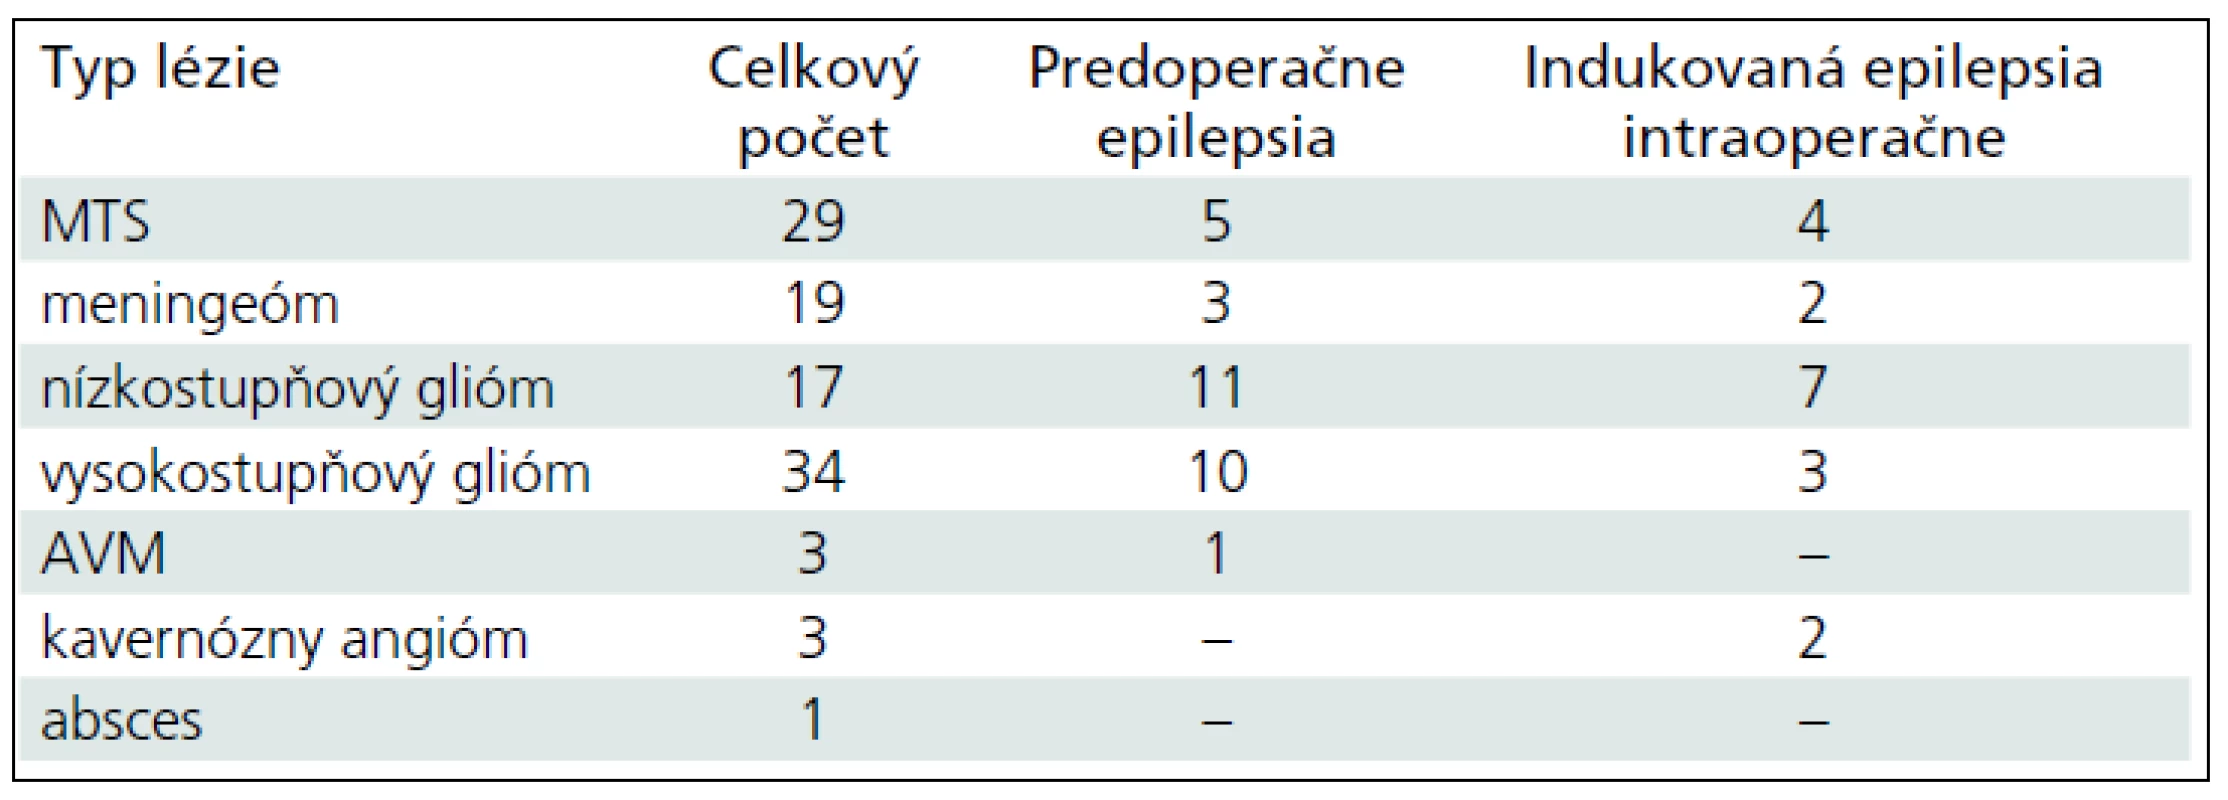 Rozdelenie pacientov podľa diagnóz, u ktorých bolo urobené intraoperatívne mapovanie. Predoperačný a peroperačný výskyt epileptických záchvatov.